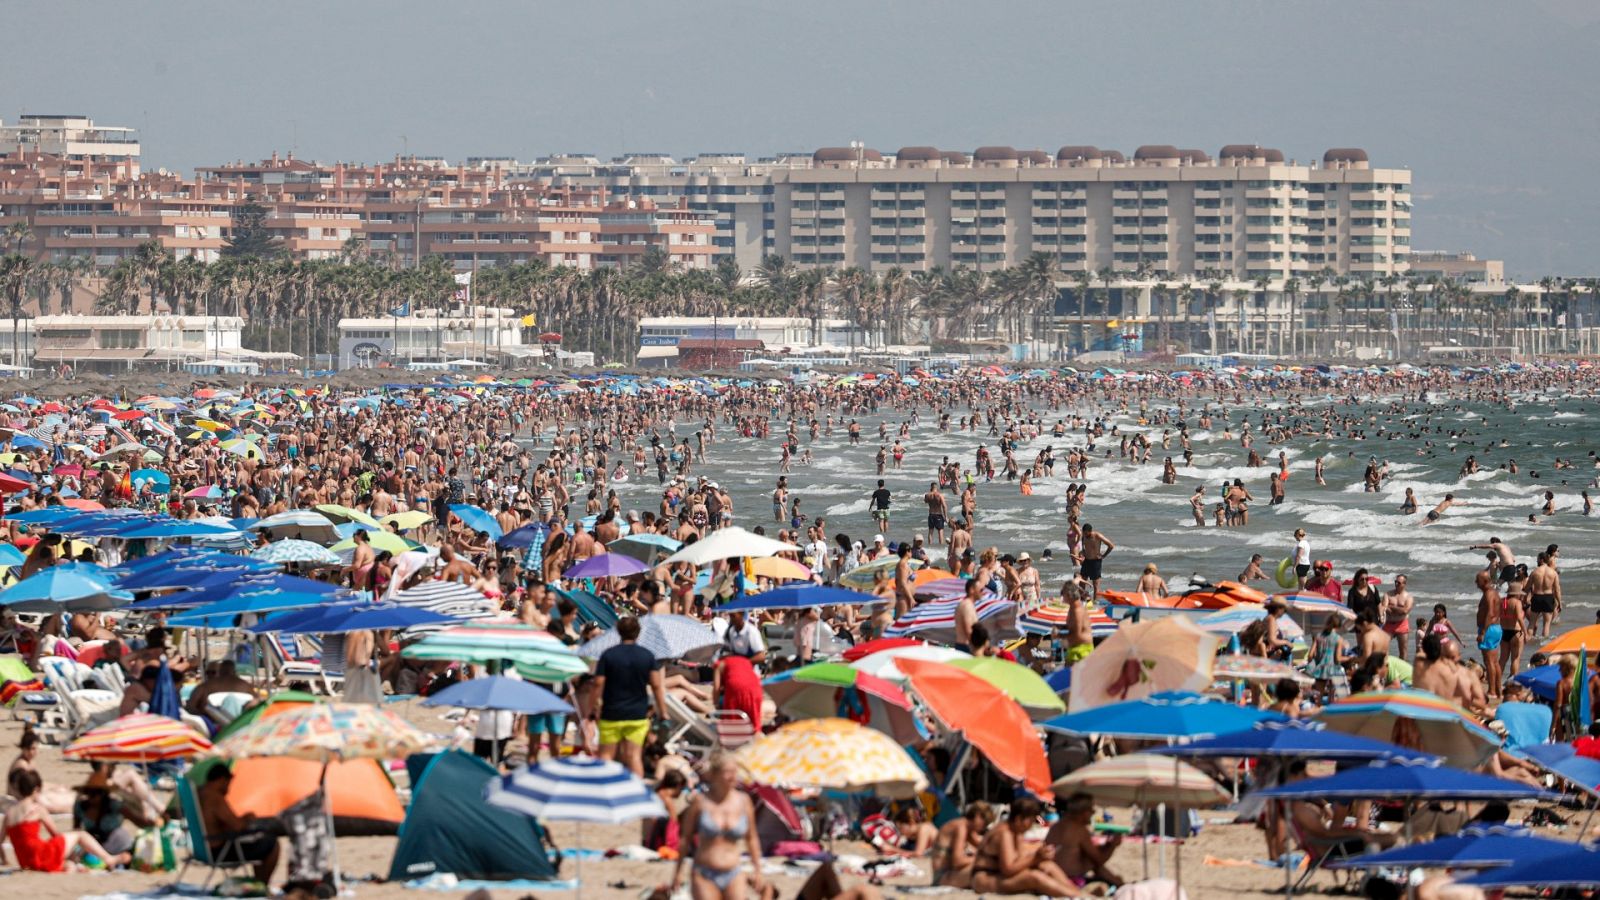 El turismo masificado vuelve con más fuerza en un verano sin restricciones